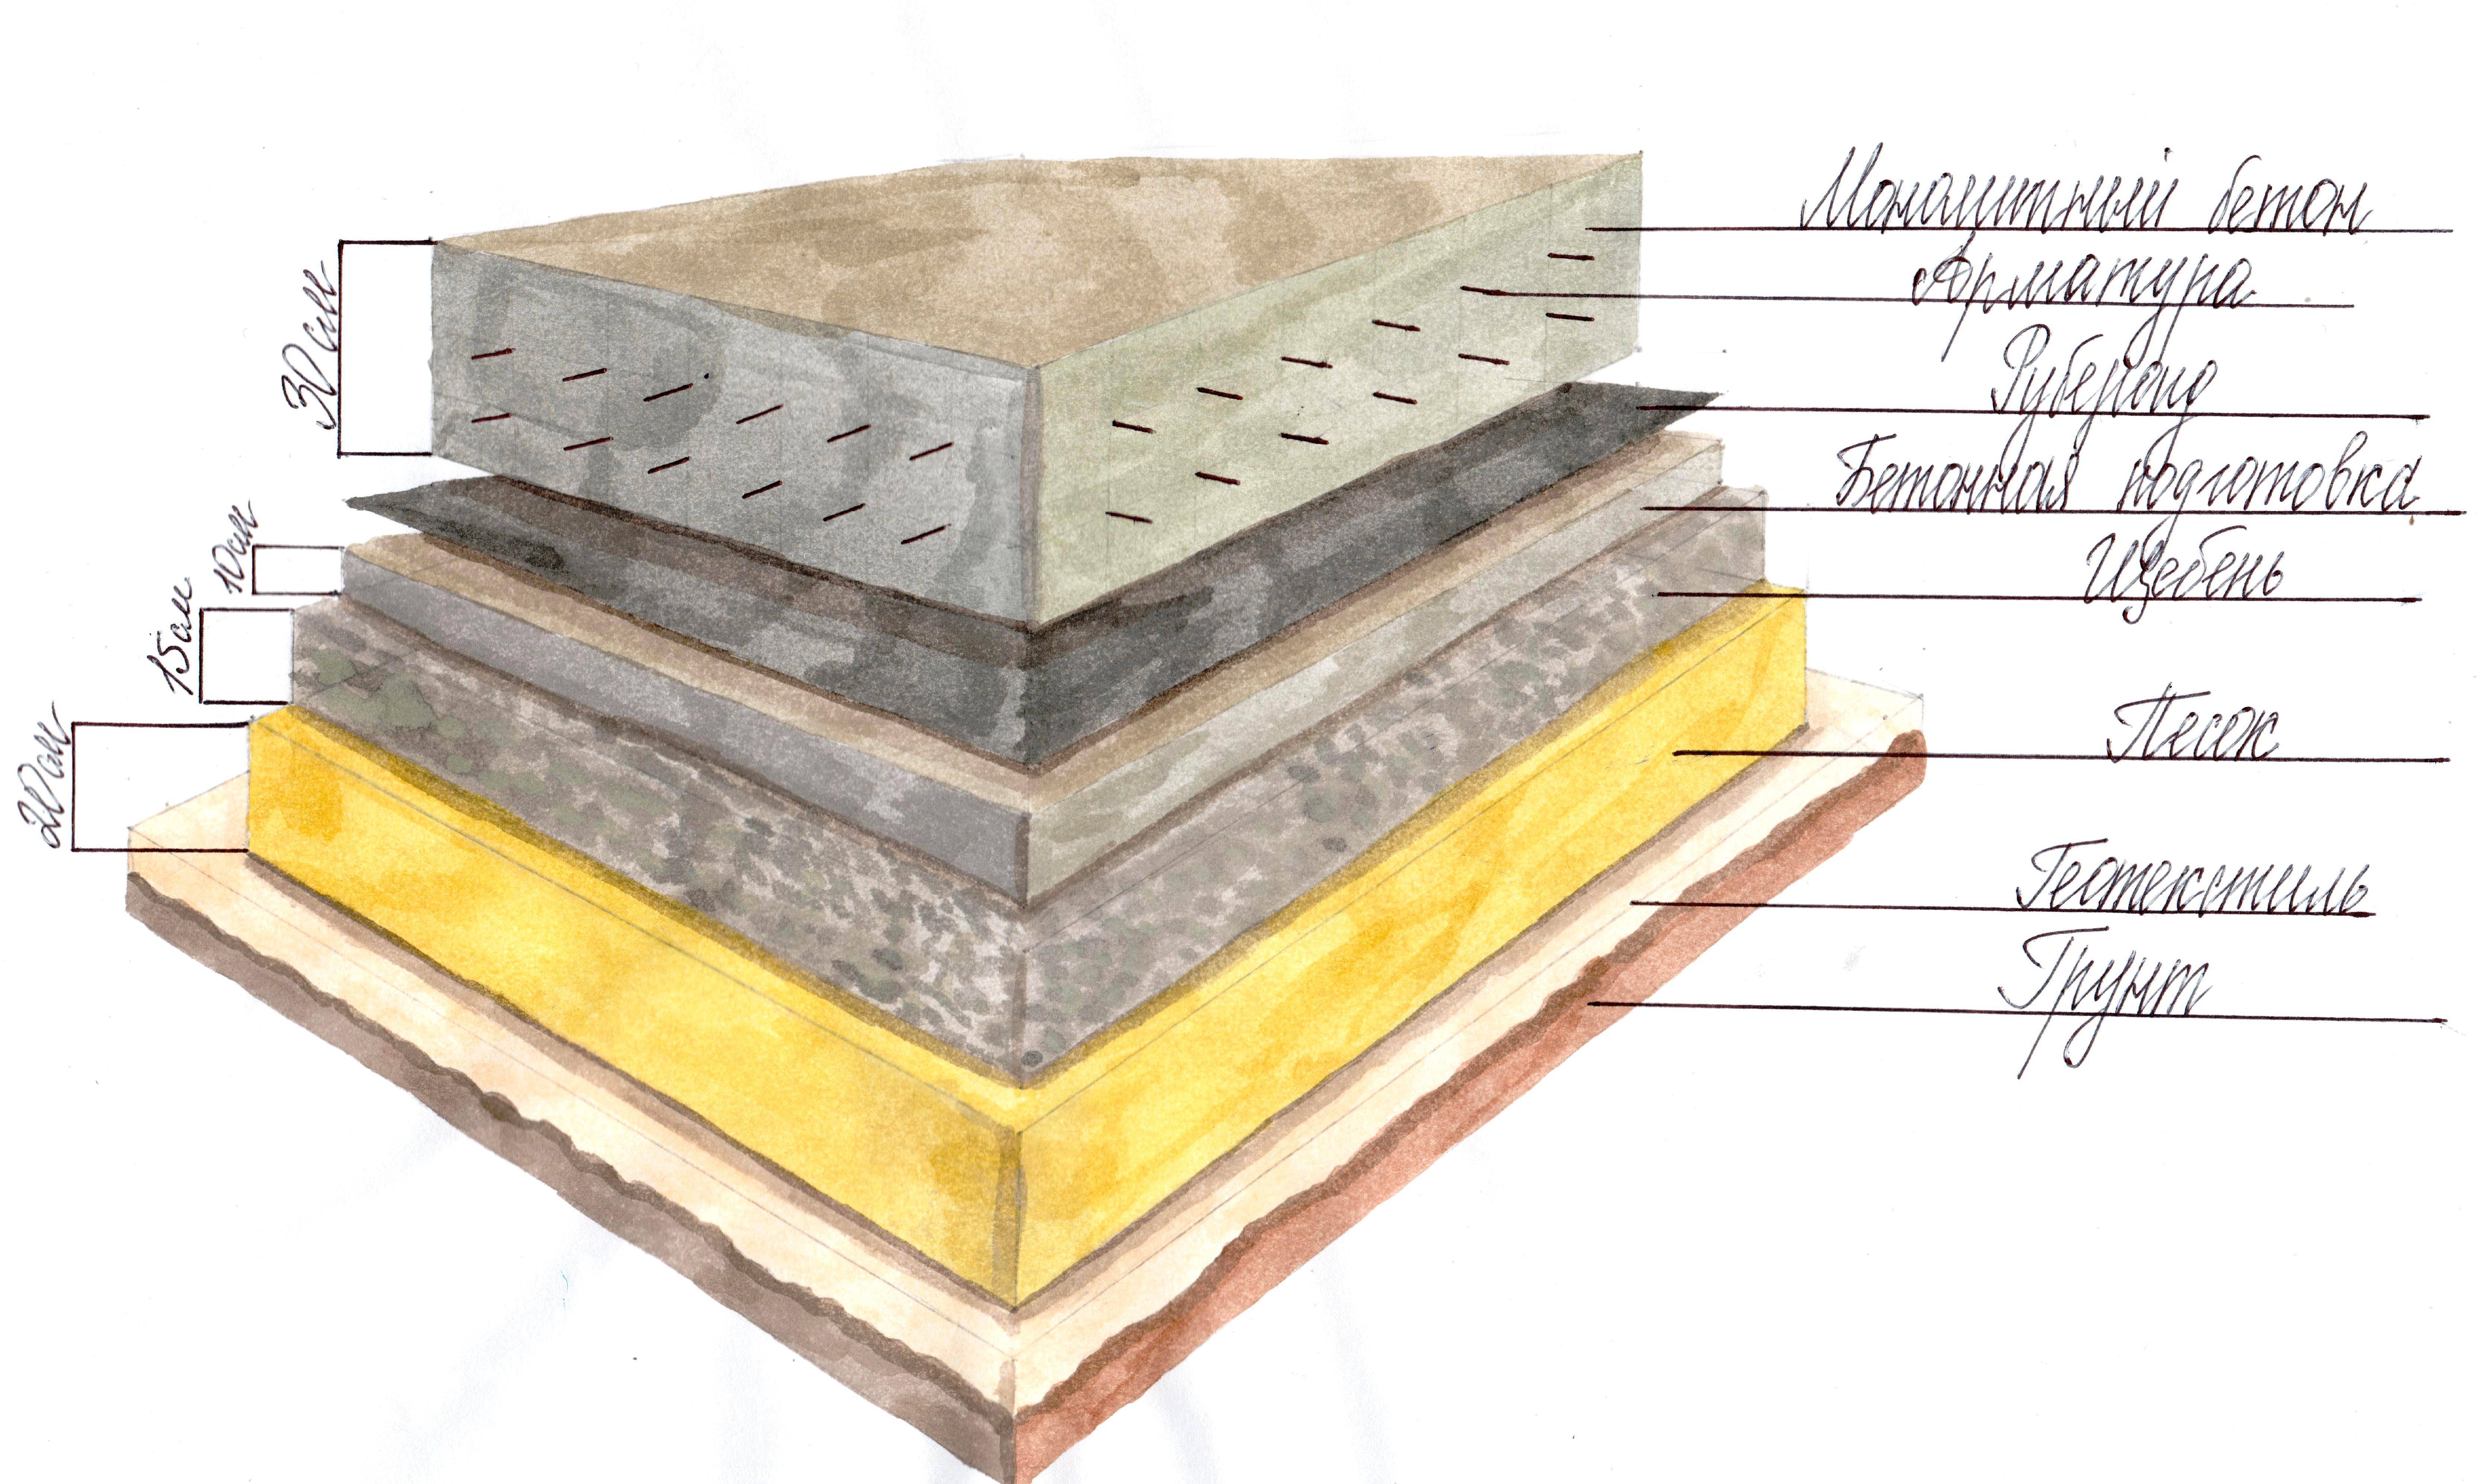 Устройство подушки под фундамент из бетона — подготовка и 3 этапа основных работ